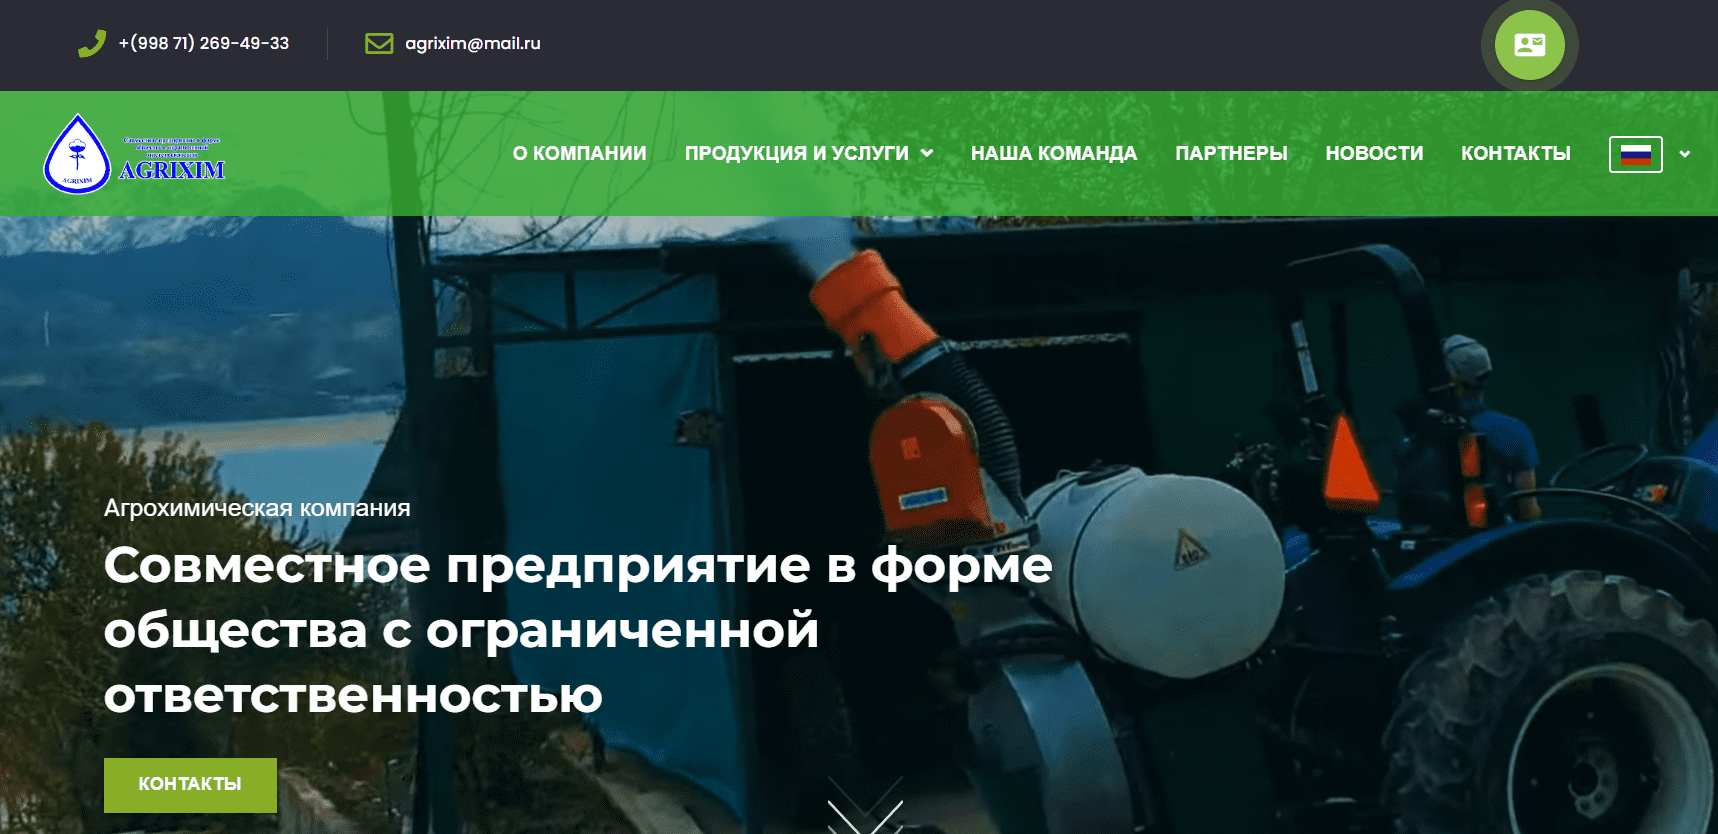 AGRIХIM (agrixim.uz) - официальный сайт